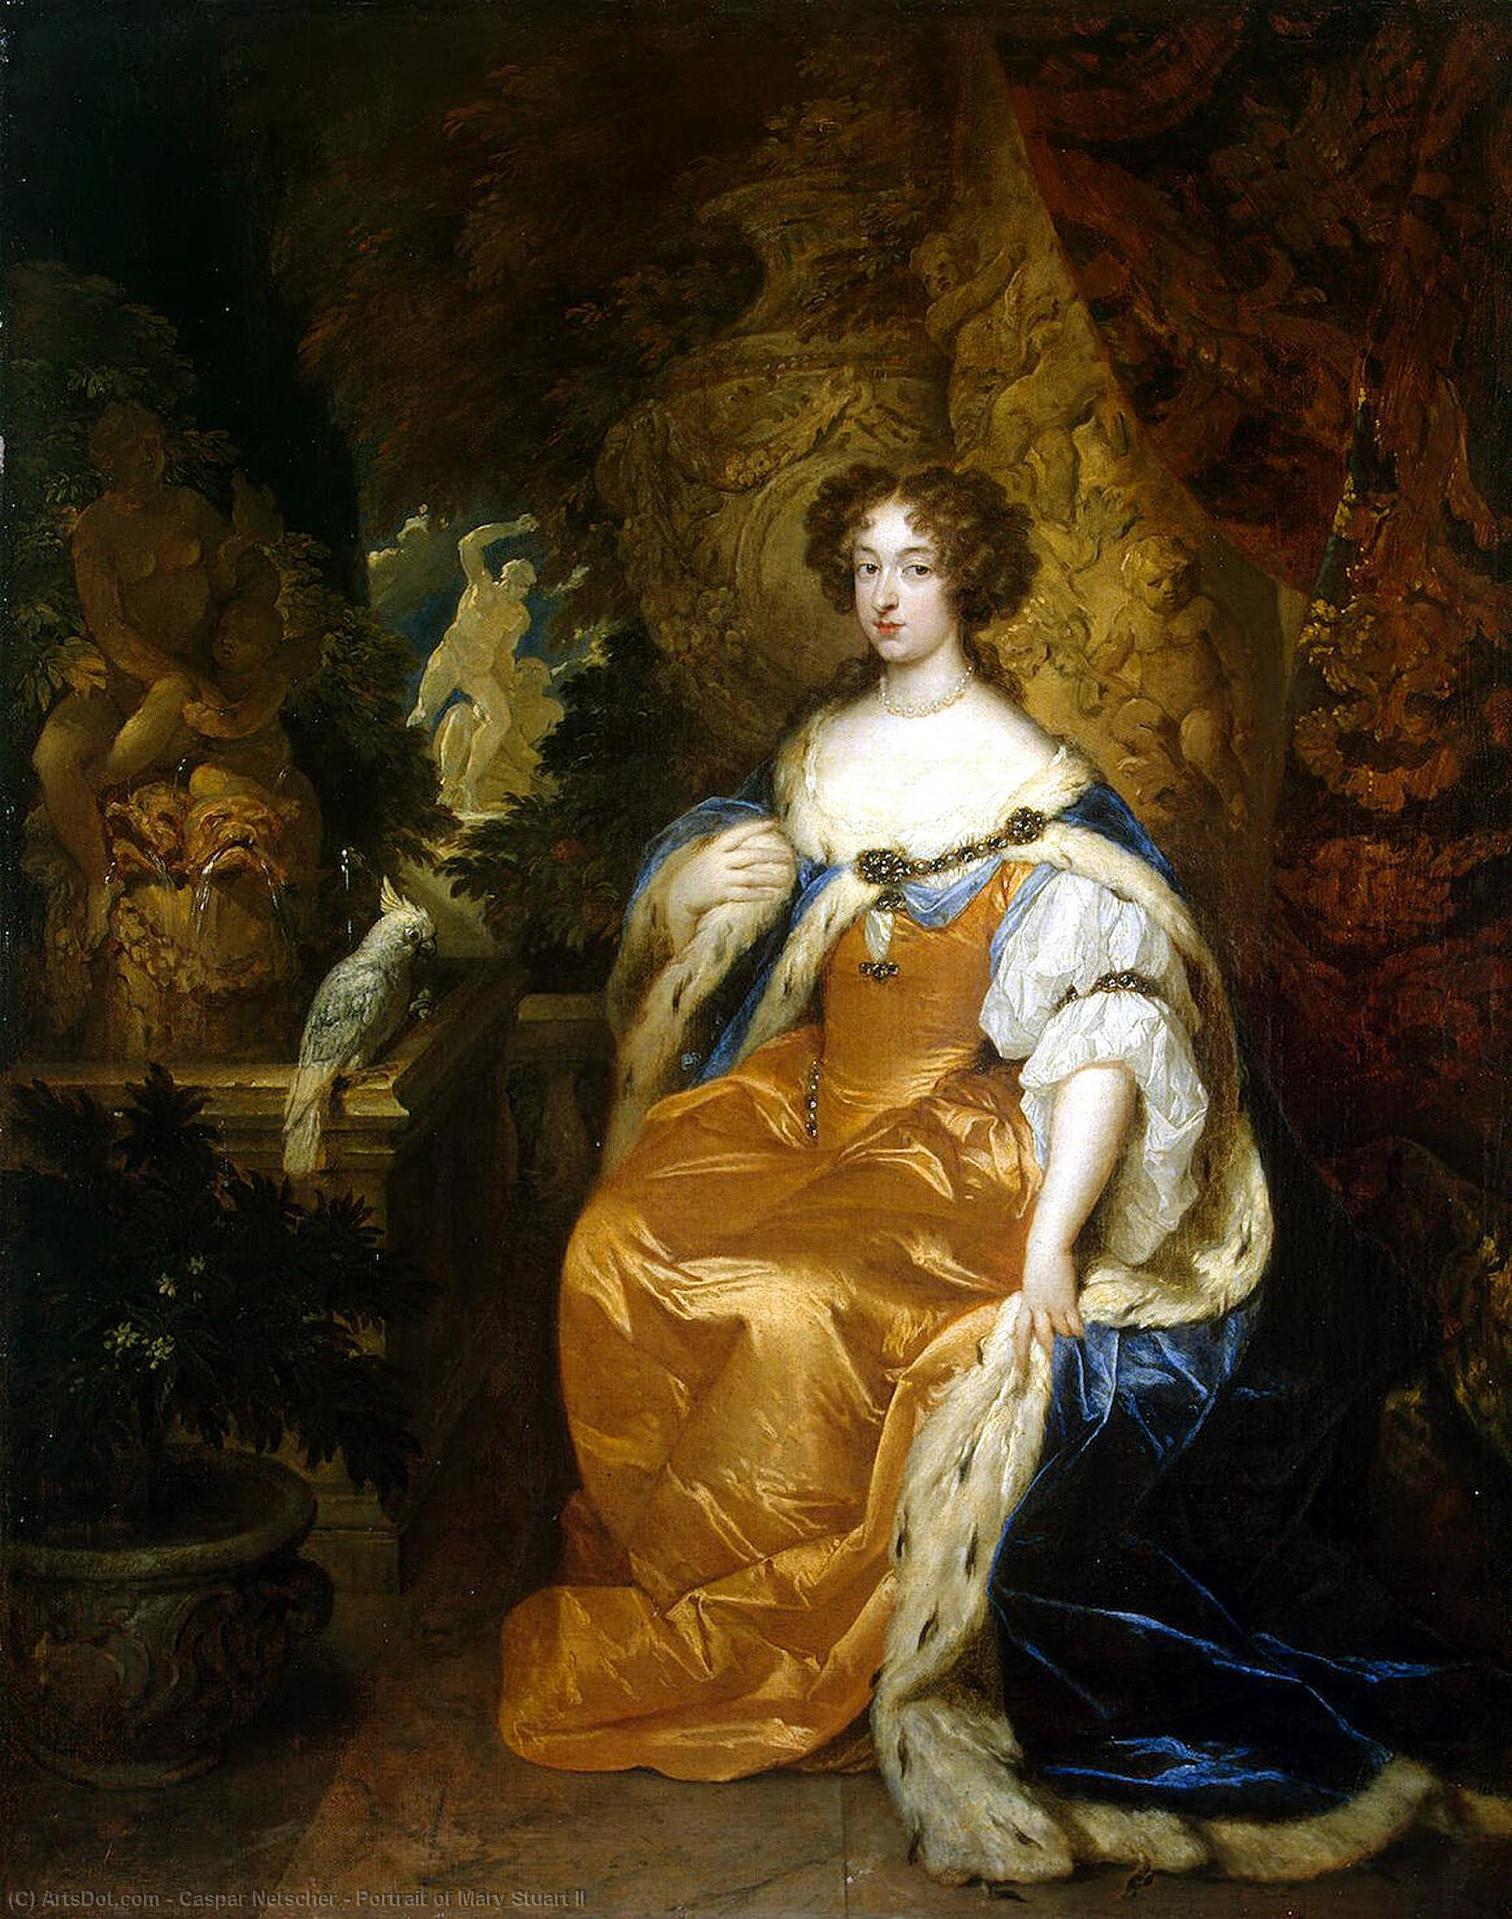 WikiOO.org - Encyclopedia of Fine Arts - Lukisan, Artwork Caspar Netscher - Portrait of Mary Stuart II